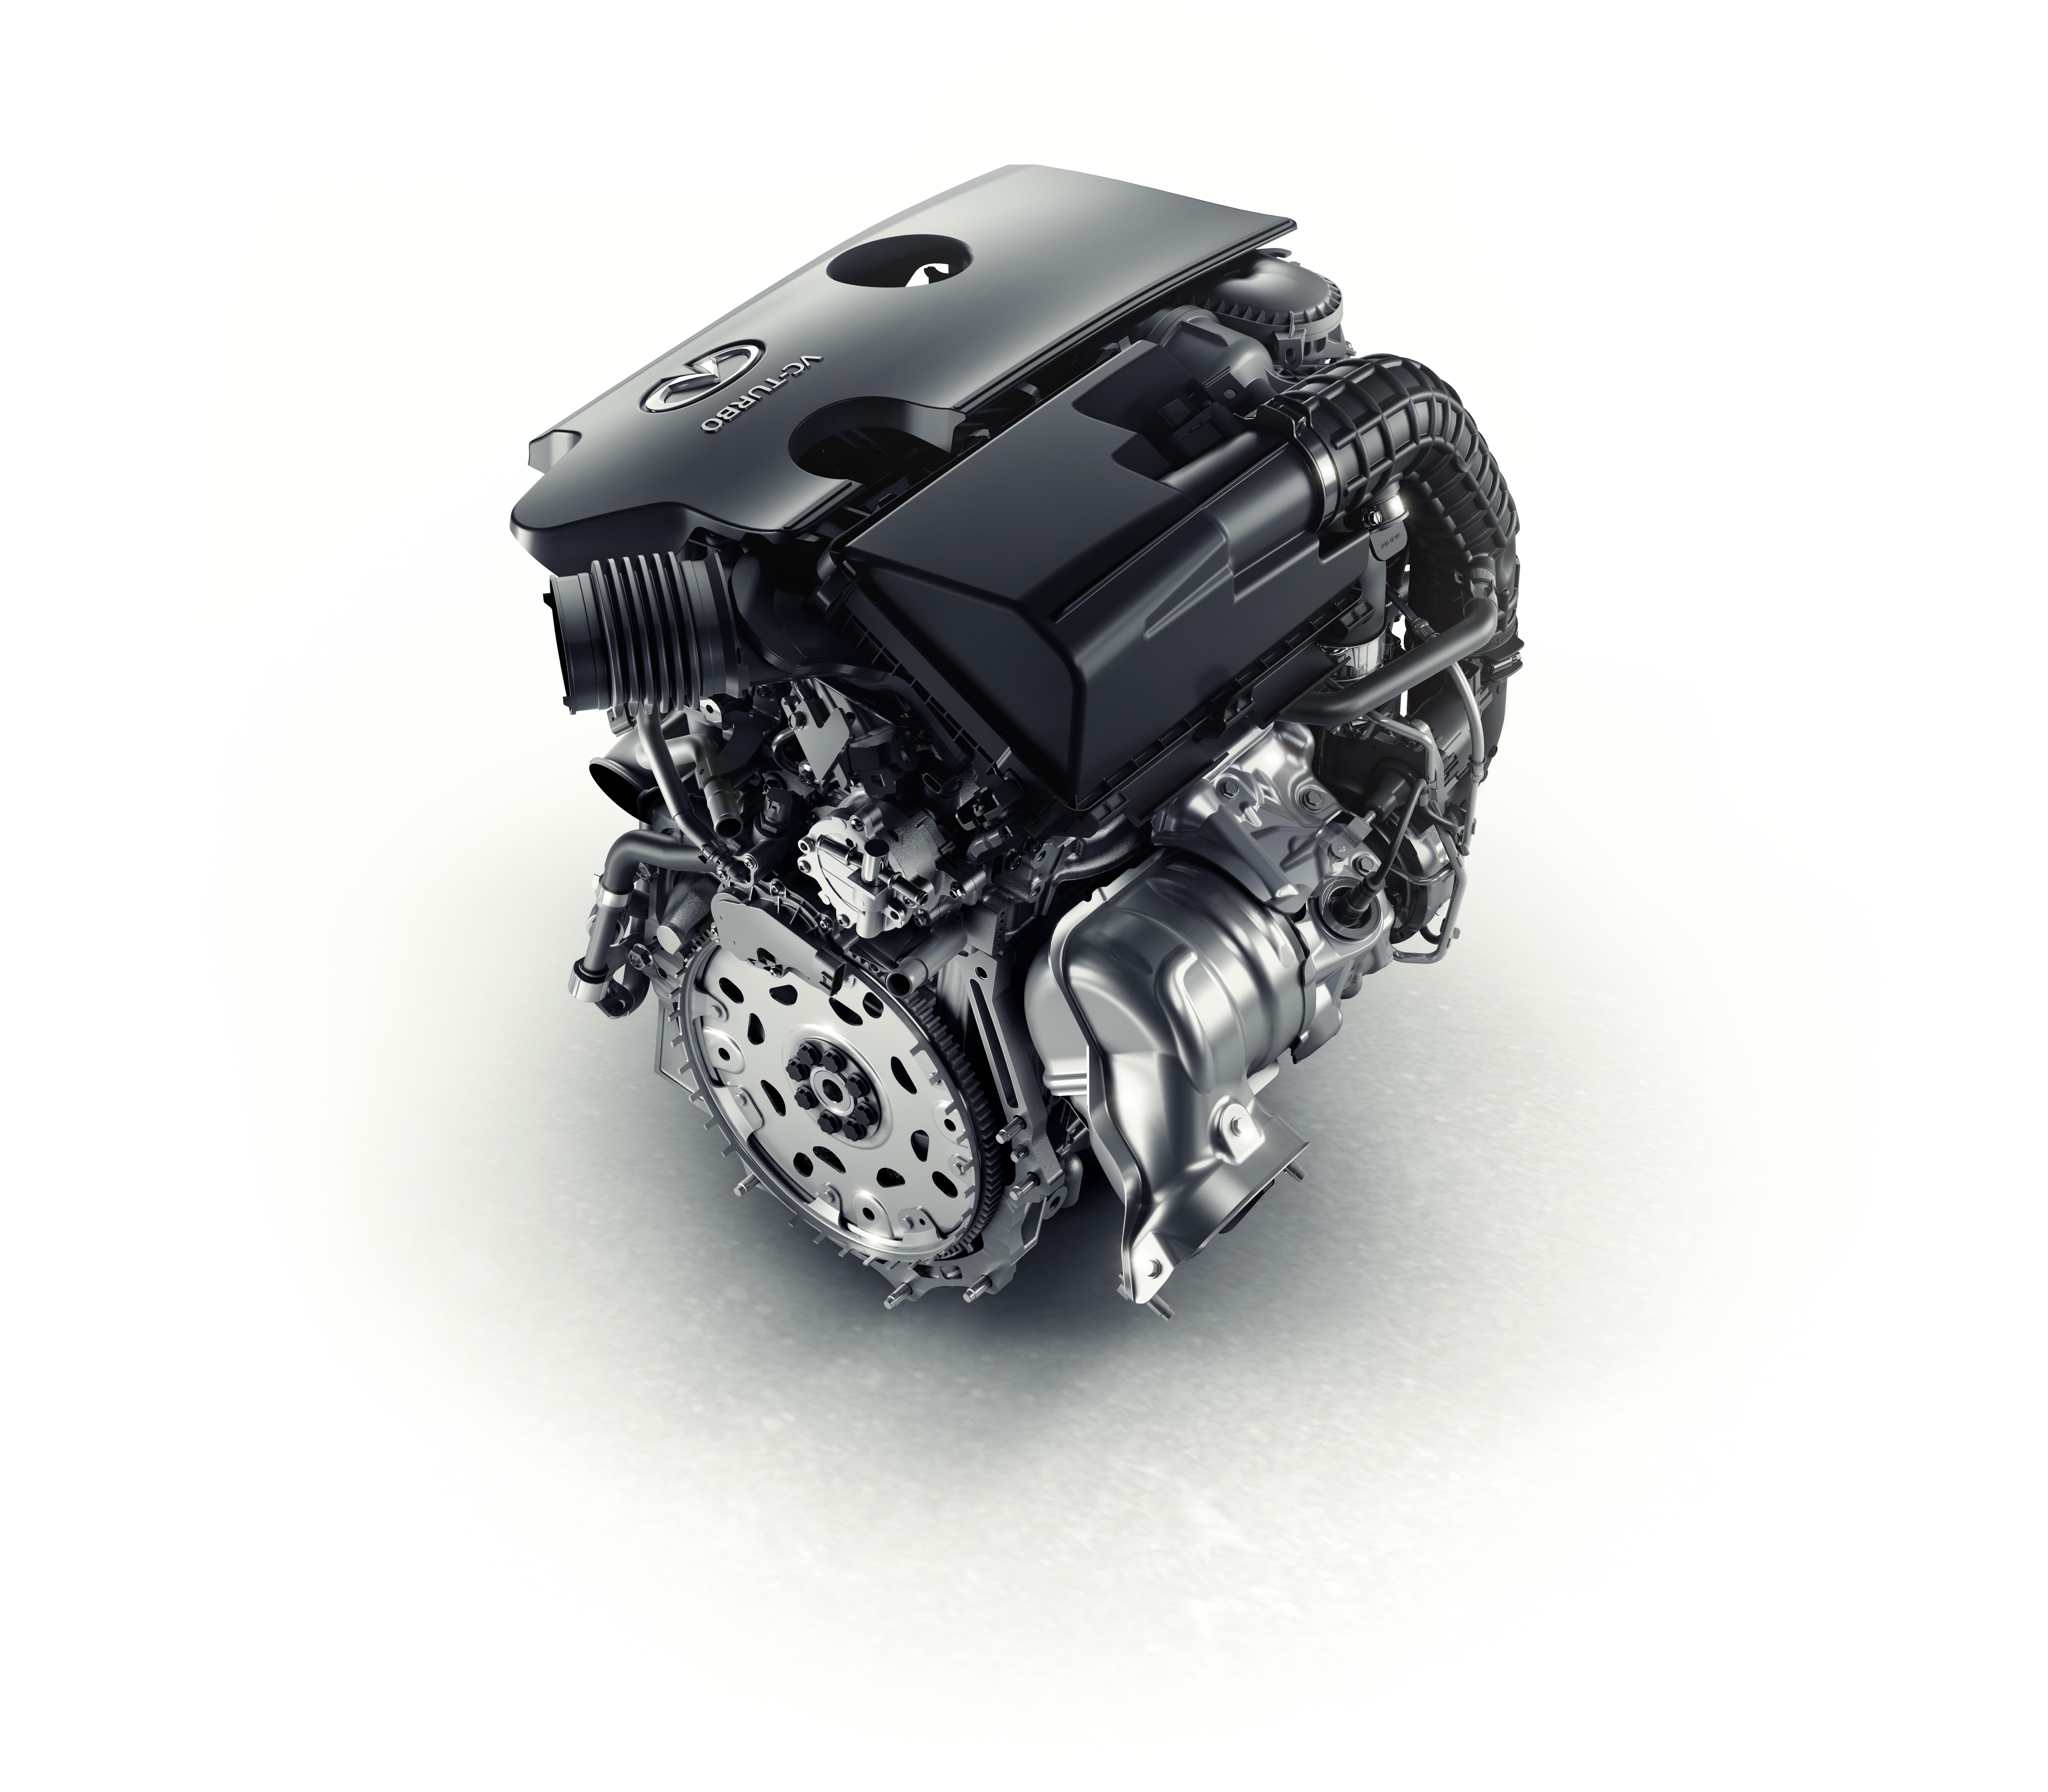 Двигатель на автомобиле является. Infiniti qx50 двигатель. Гибридный мотор Инфинити. Мотор qx50. Мотор Инфинити qx50 с изменяемой степенью.